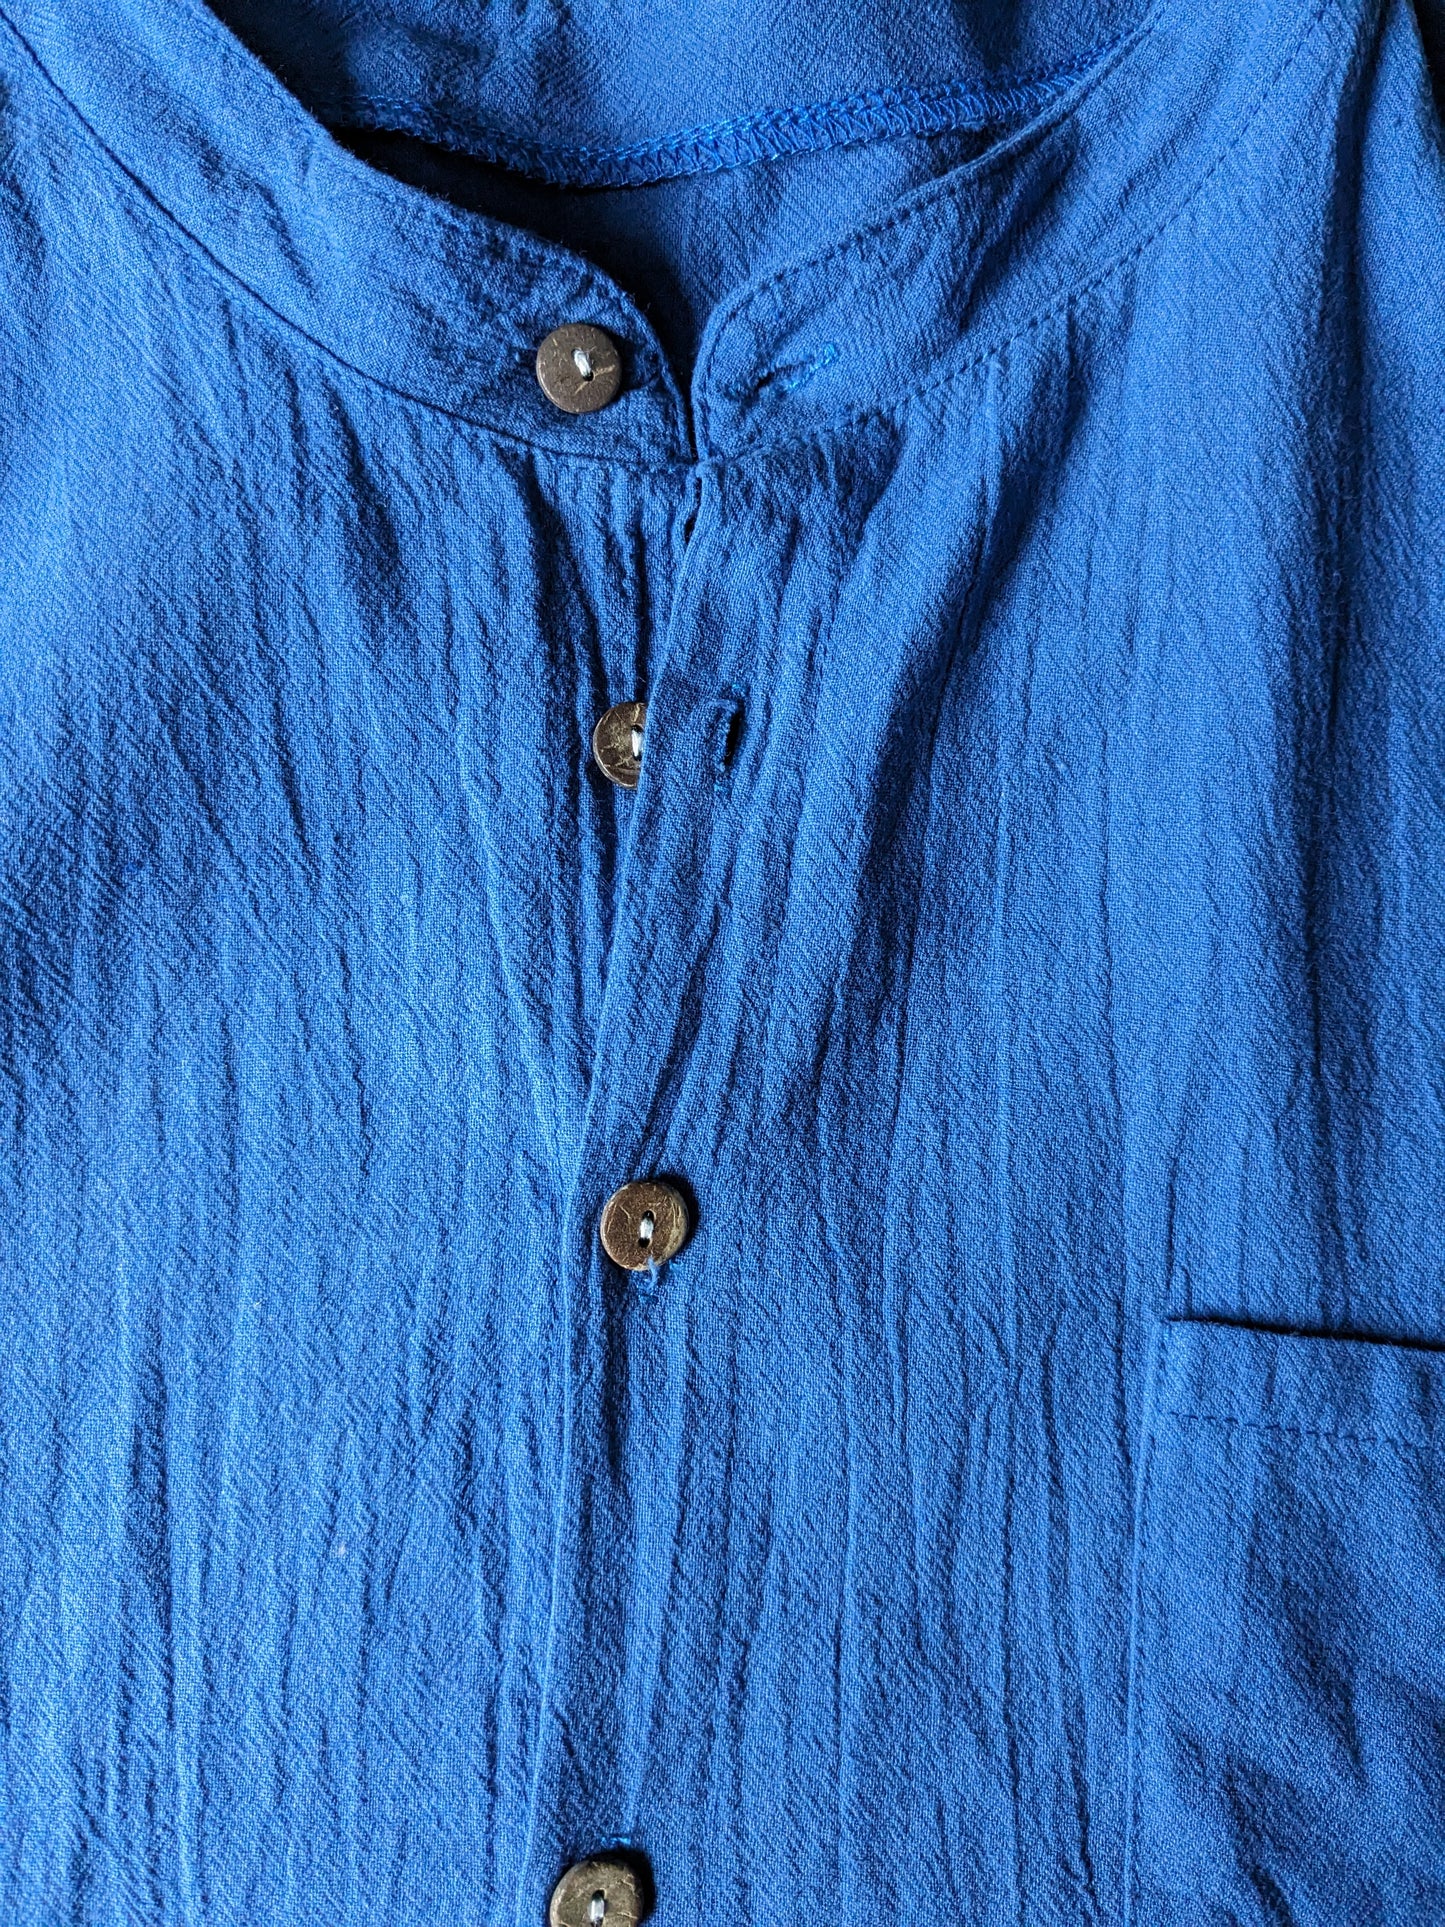 Camisa vintage manga corta con mao / cuello elevado. Azul. Talla M.